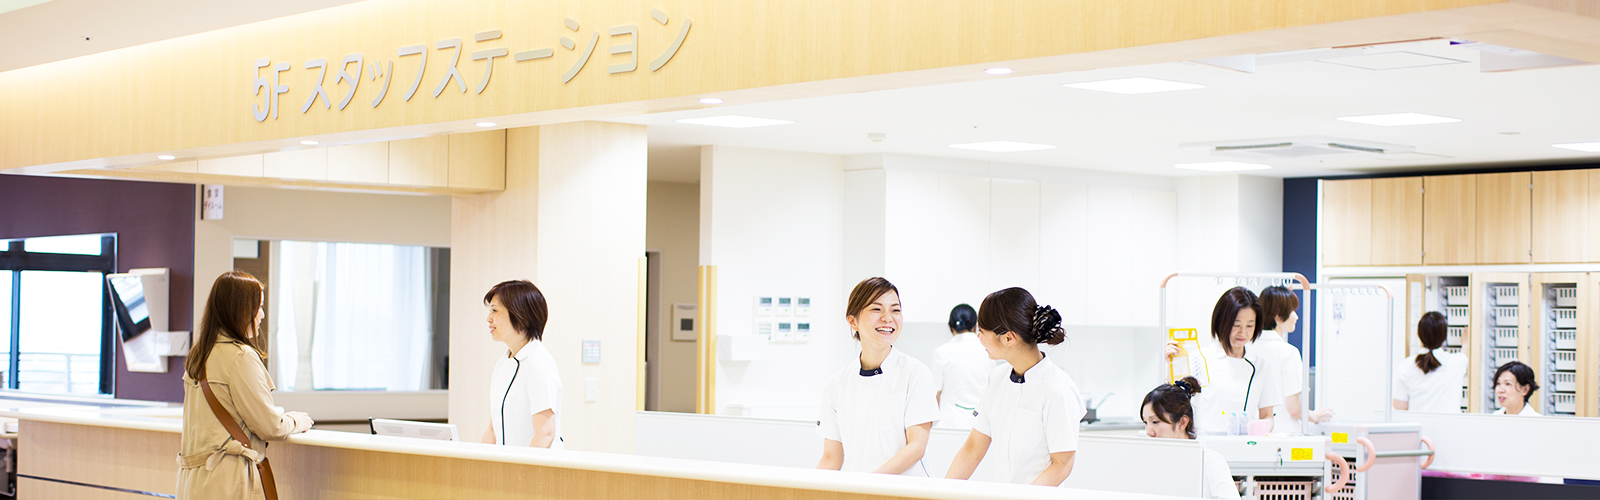 岸和田リハビリテーション病院 看護部サイト